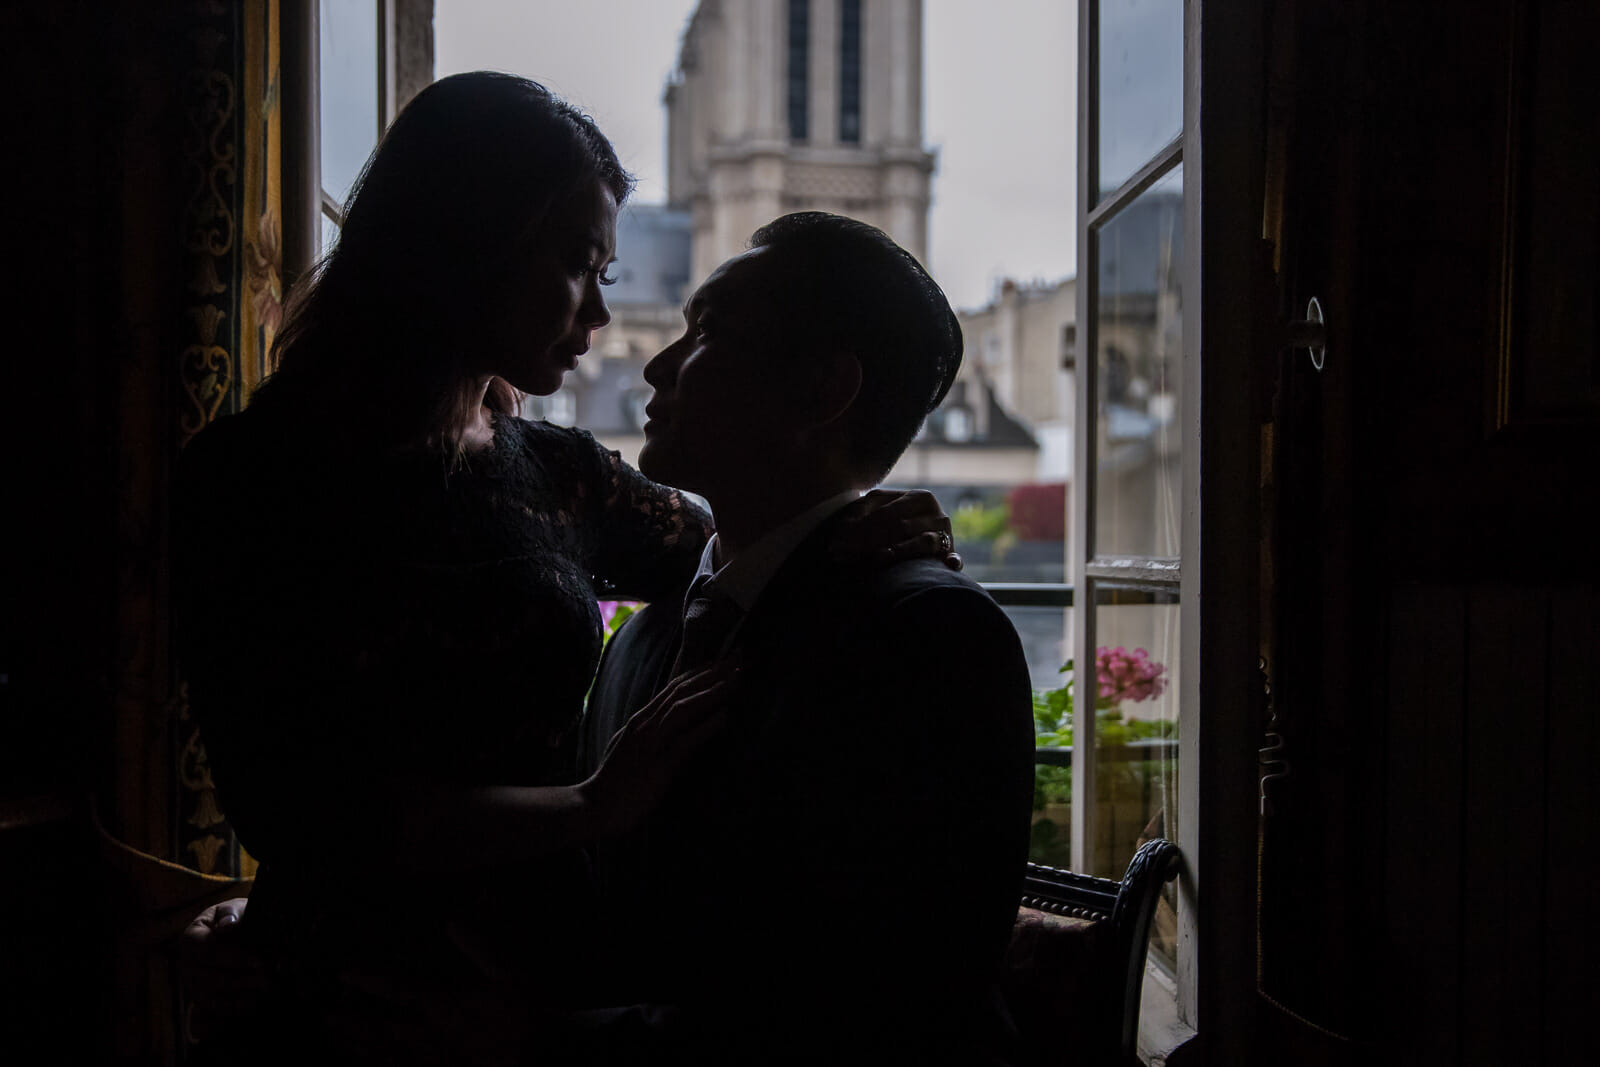 Dreamy couple photos at Au Vieux Paris d'Arcole Cafe with Notre Dame view